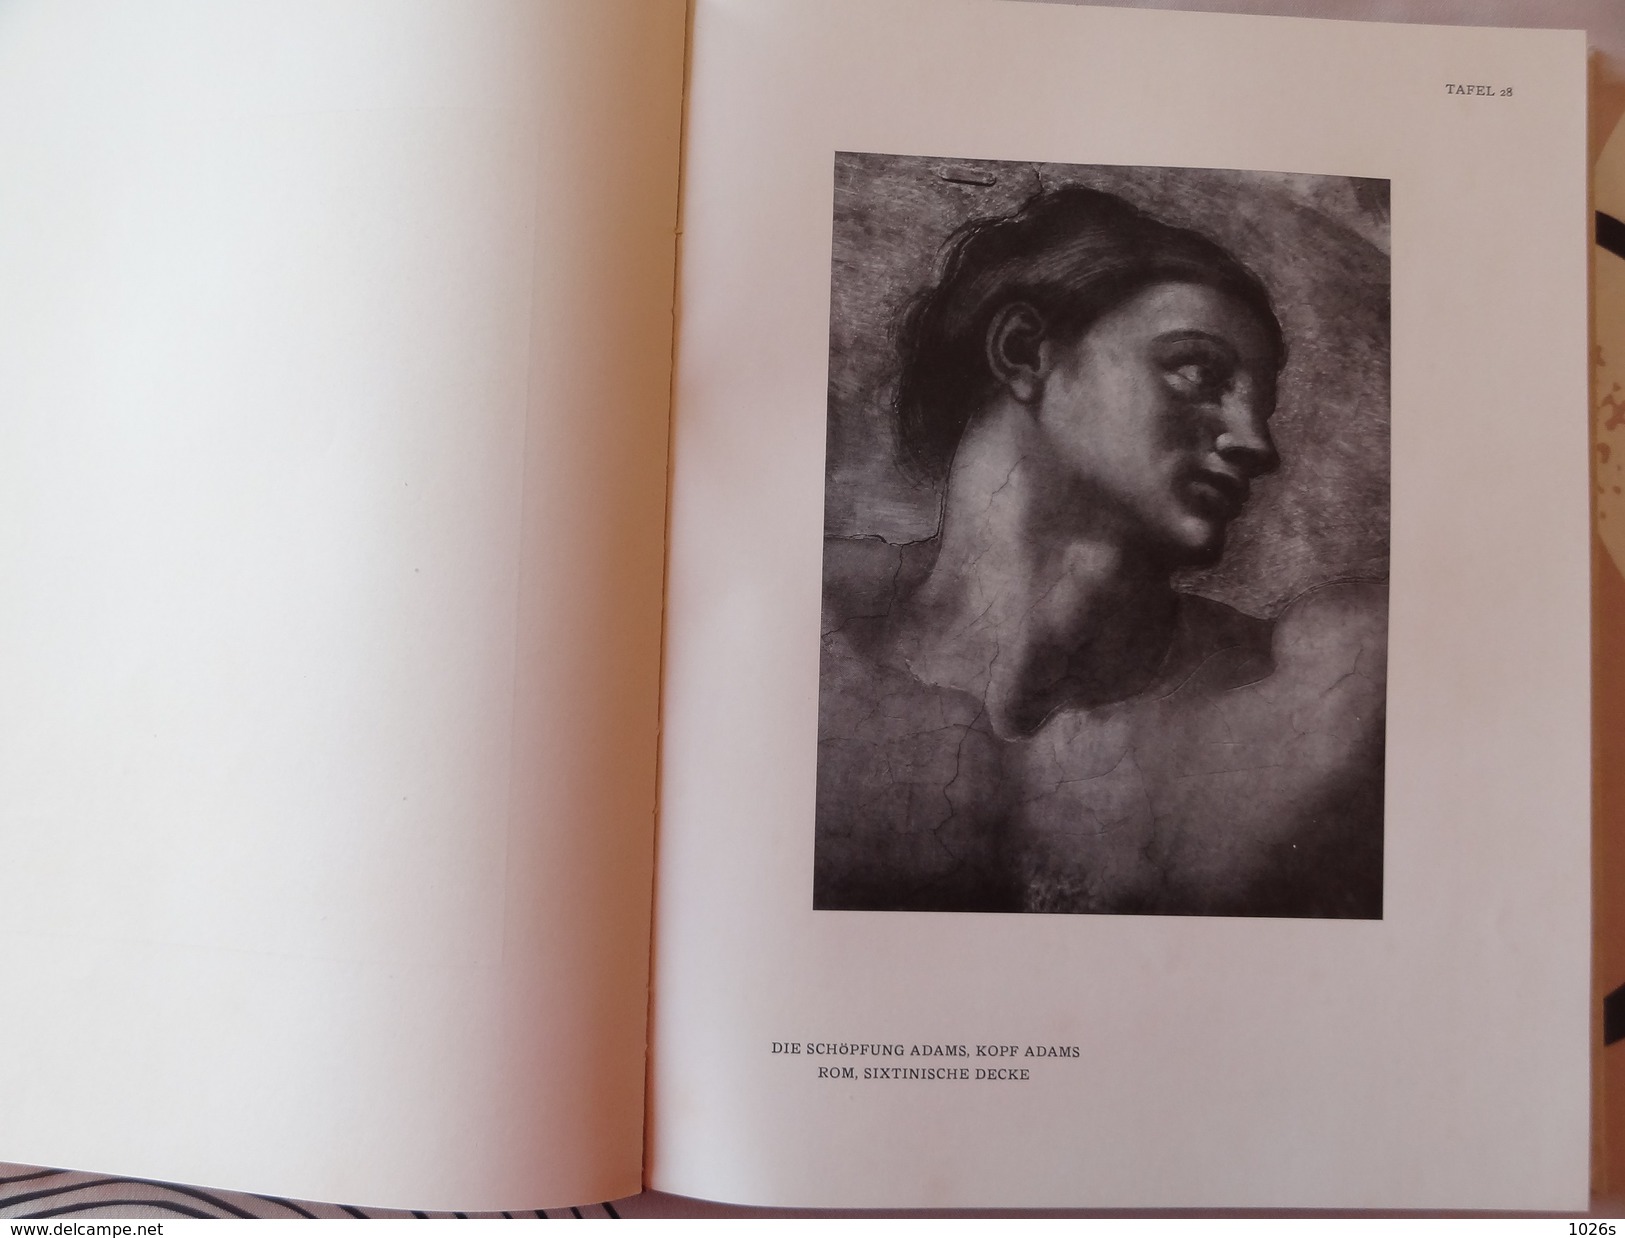 LIVRE D'ART SUR MICHELANGELO DE 1923 PAR FRITZ KNAPP PAR LES EDITIONS F.BRUCKMANN - MUNCHEN